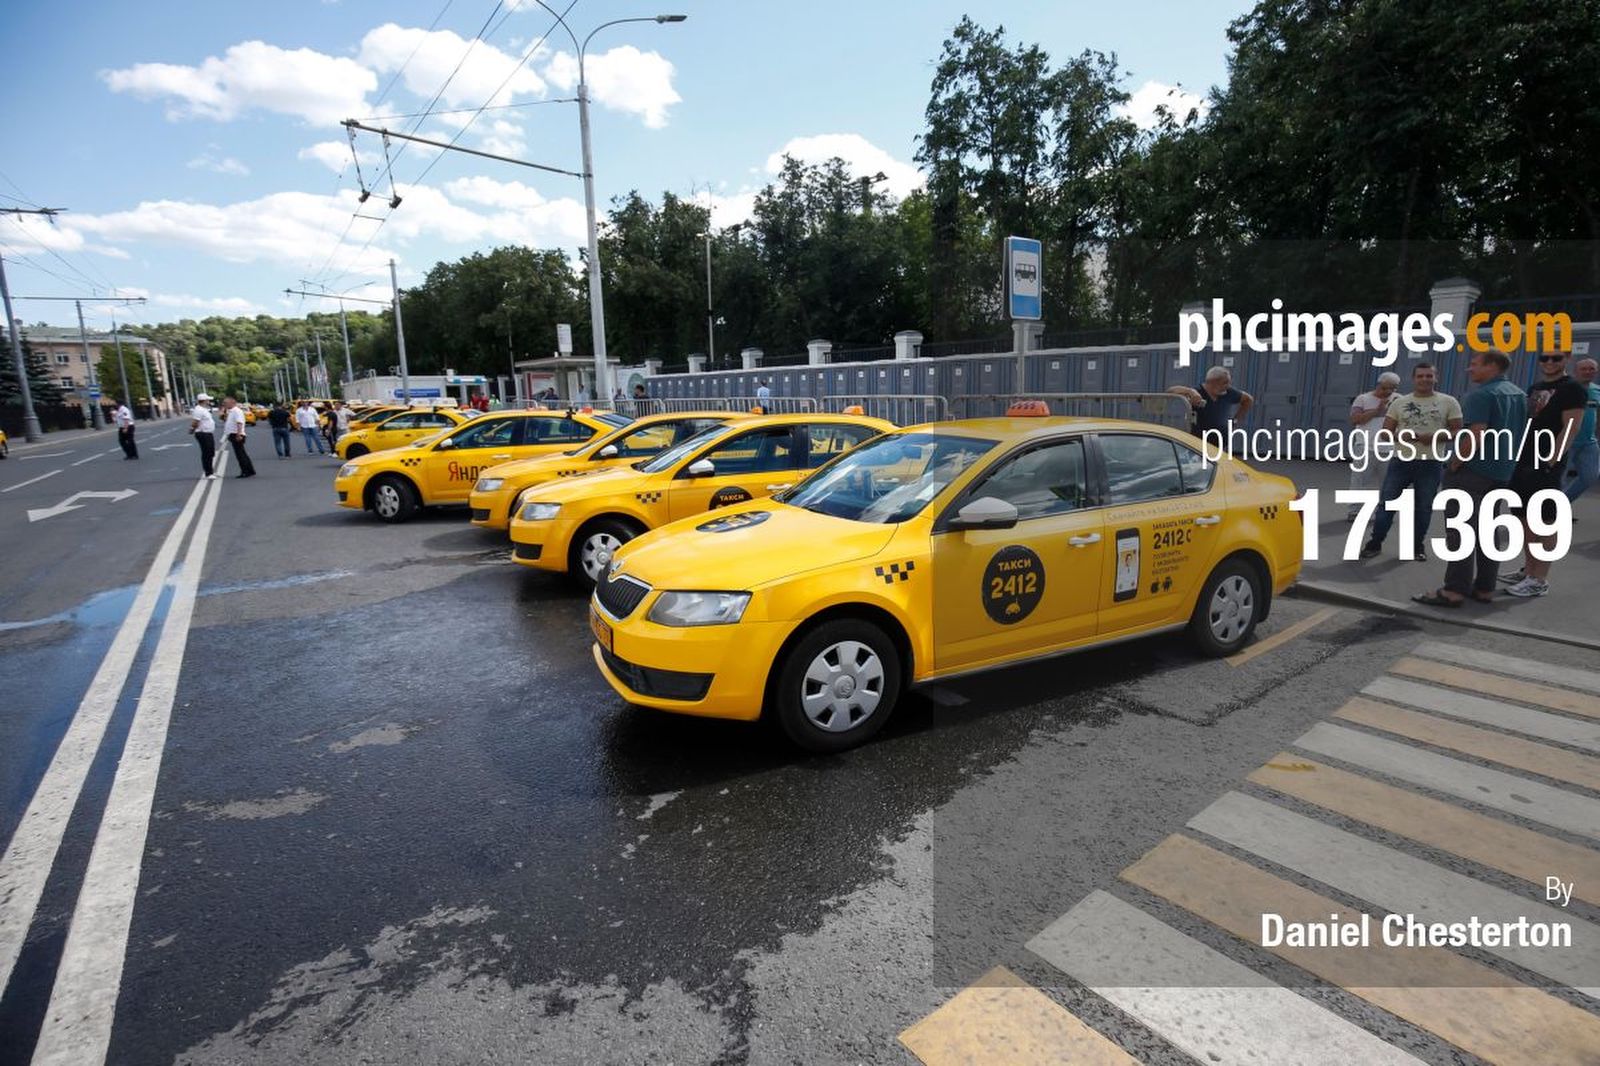 Taxis line up outside Luzhniki Stadium